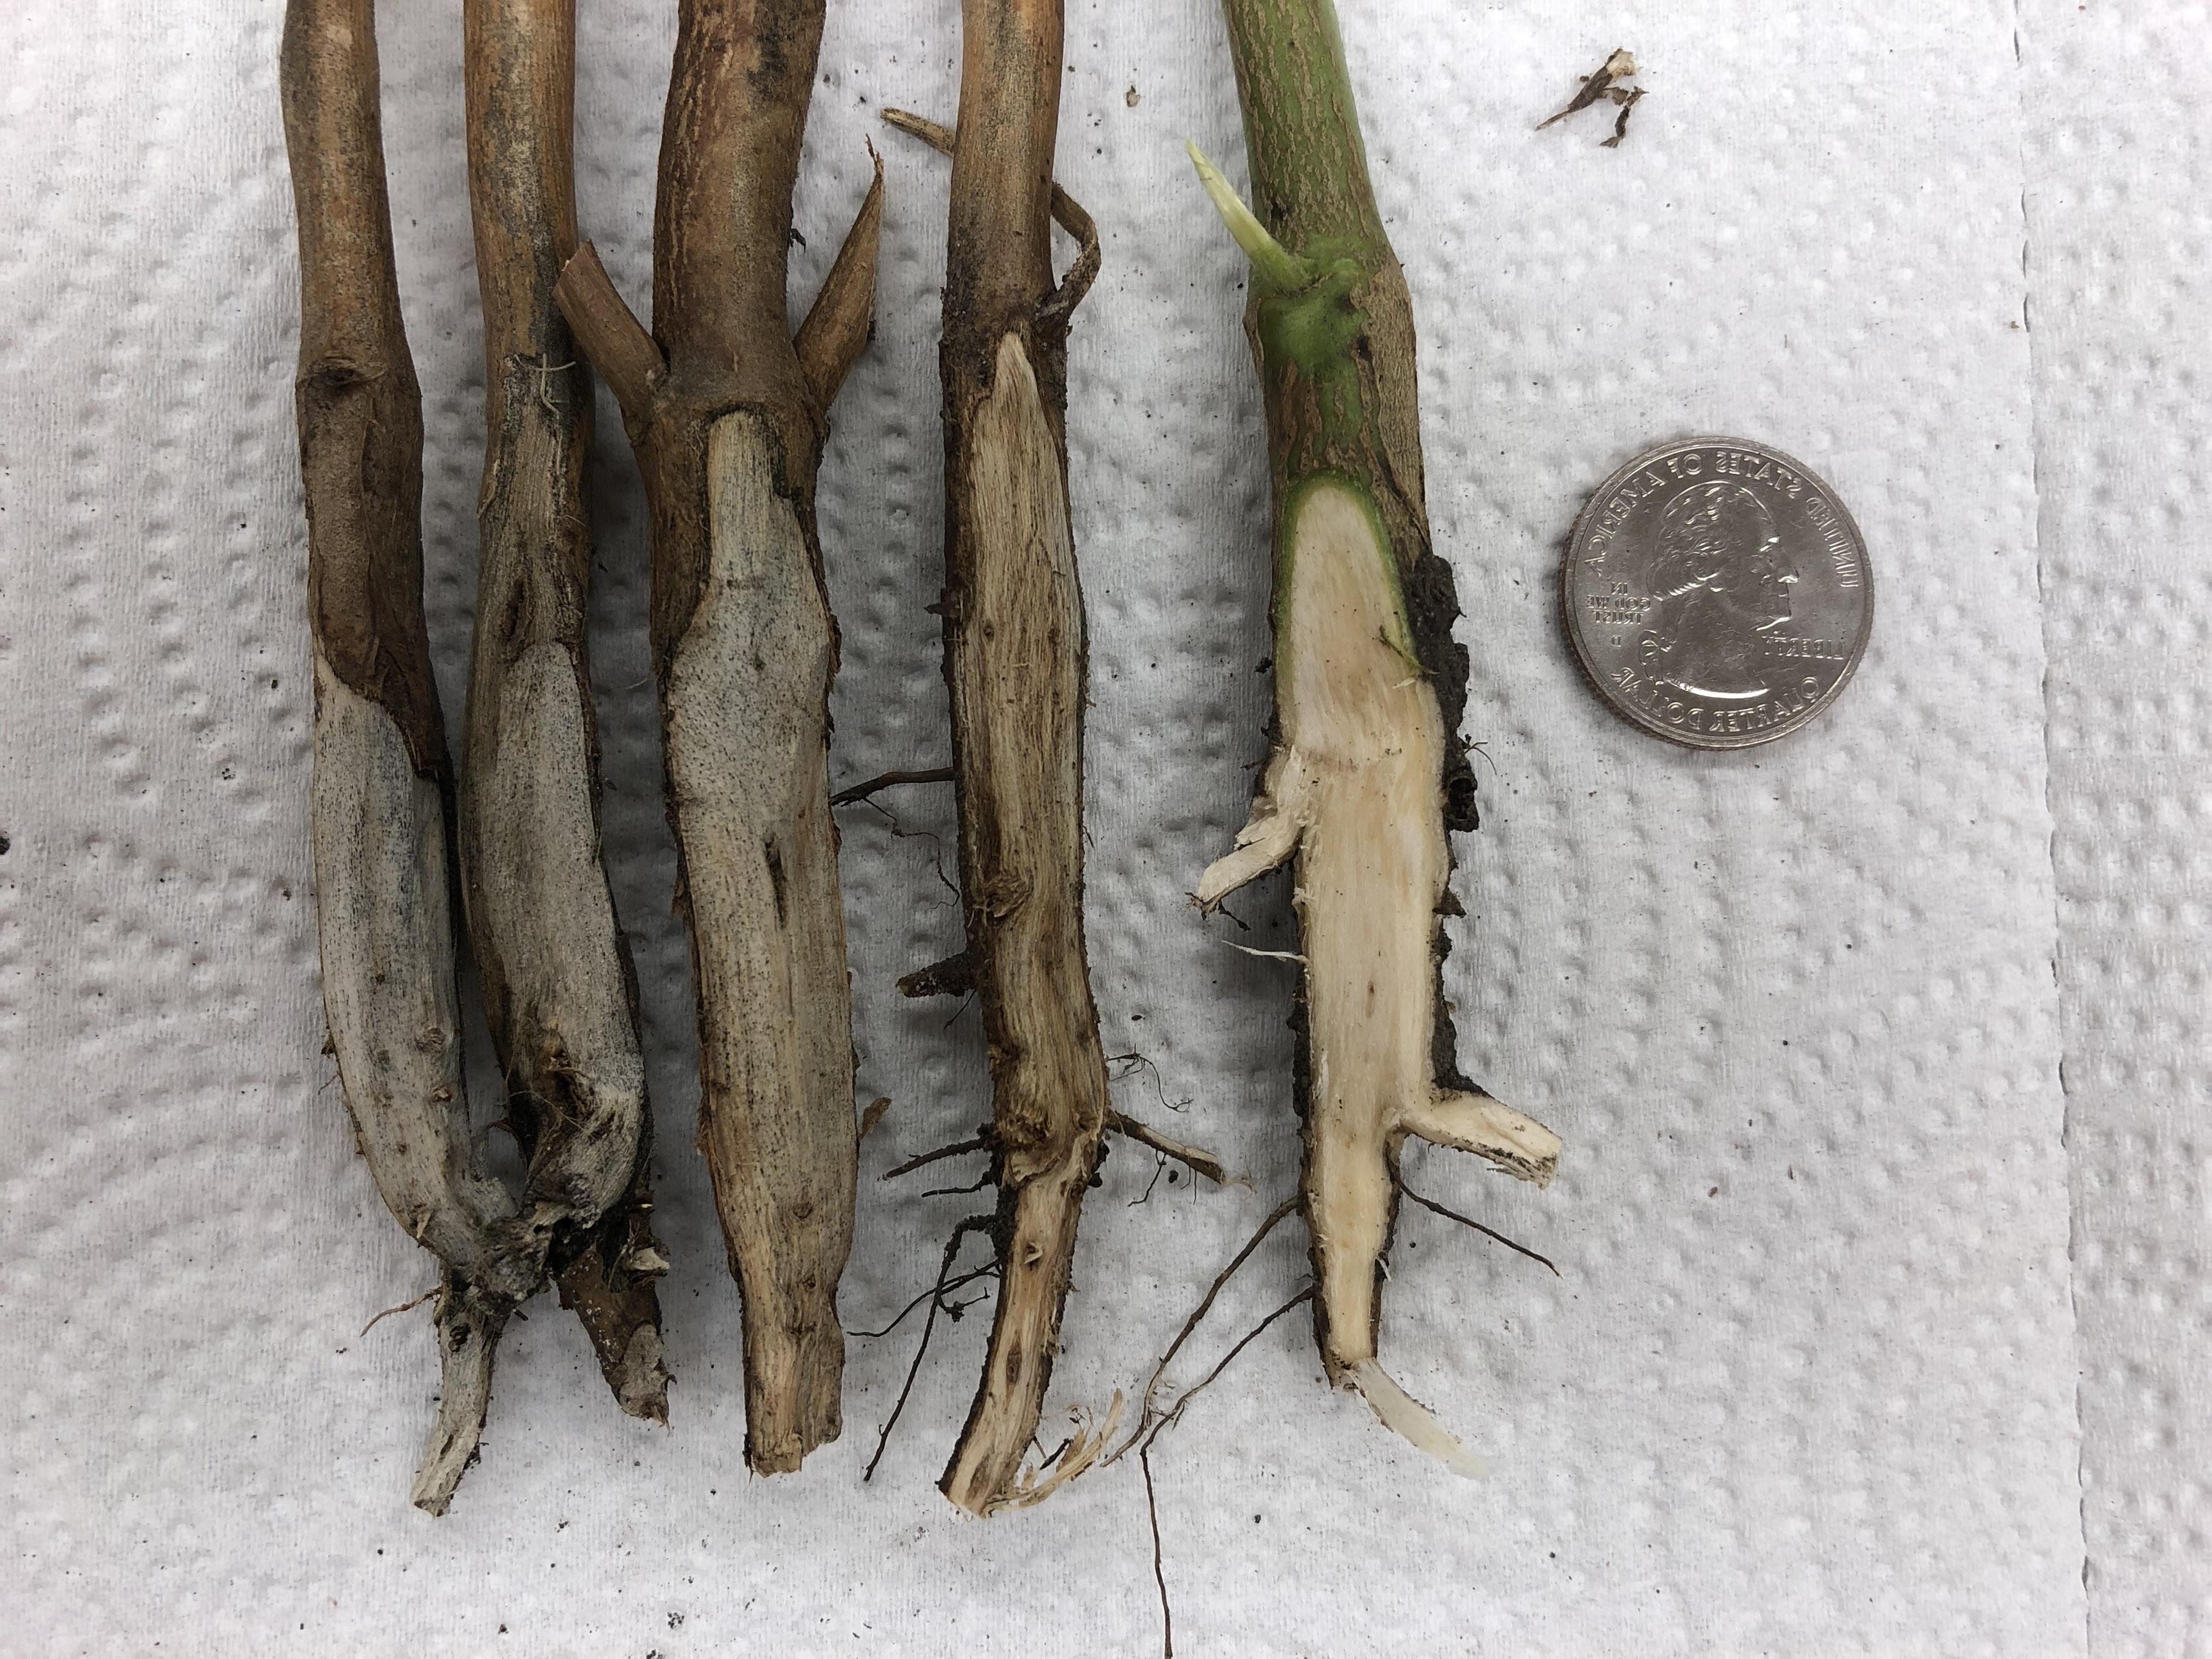 五根大豆茎的外层组织被刮掉了. 其中一根茎的内部颜色很浅. 其他四个是灰色到黑色的. 一个银色的U.S. 照片中有25美分的硬币.